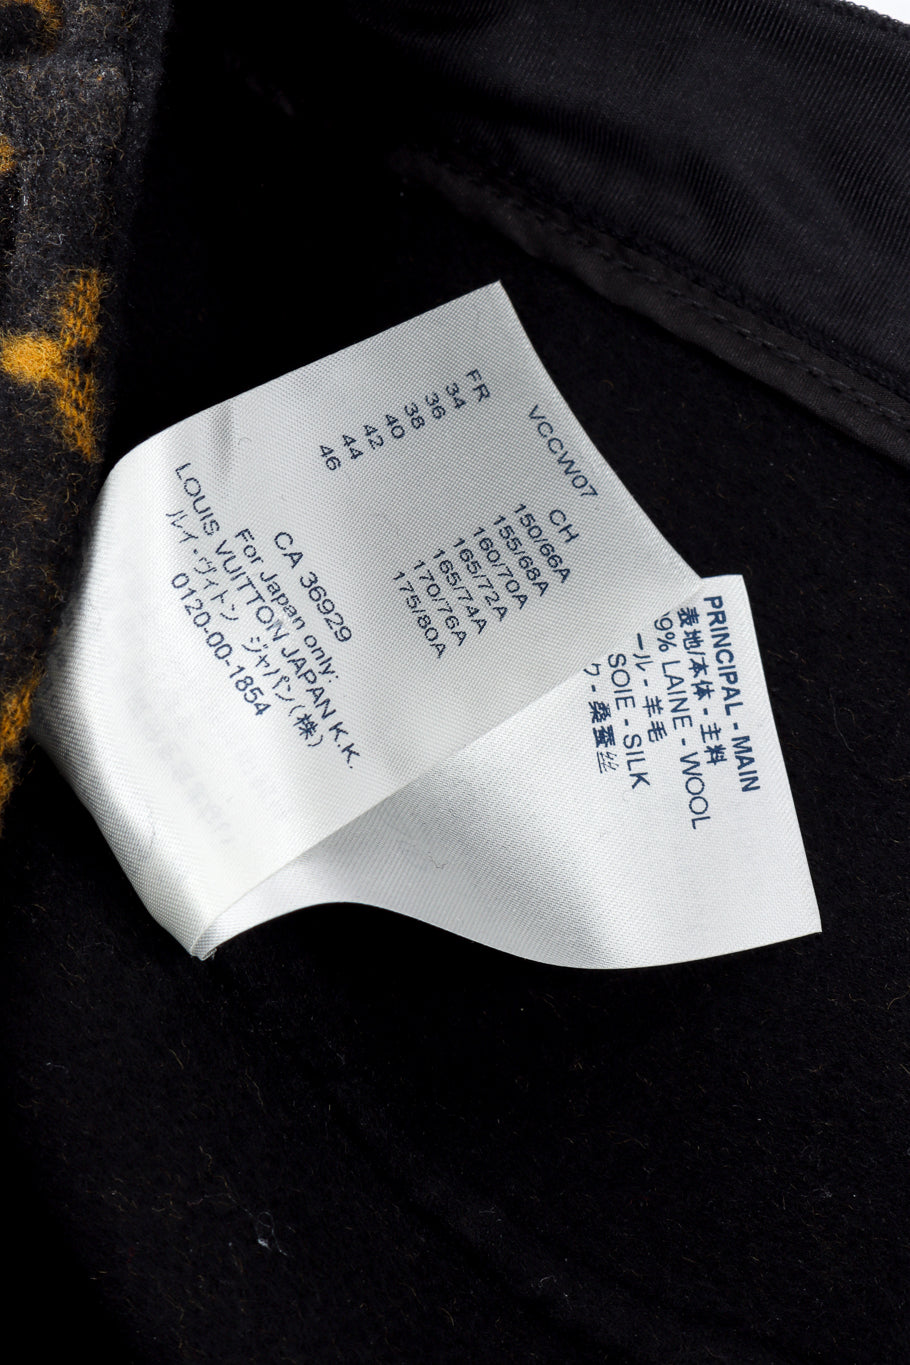 Louis Vuitton Monogram Slit Skirt fabric content label @recess la